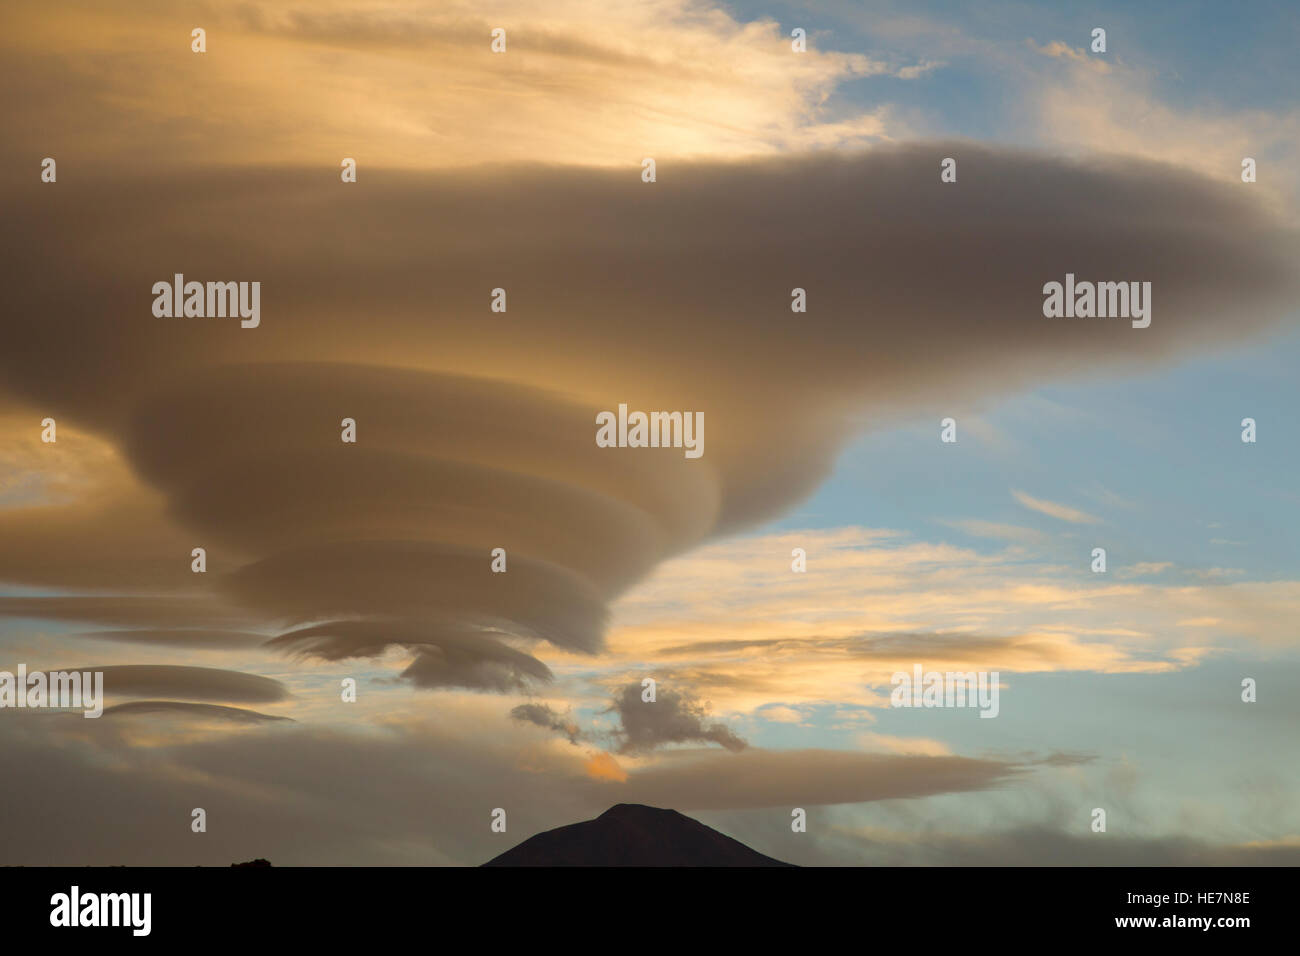 Altocumulus lenticularis or lenticular cloud in Bolivia Stock Photo